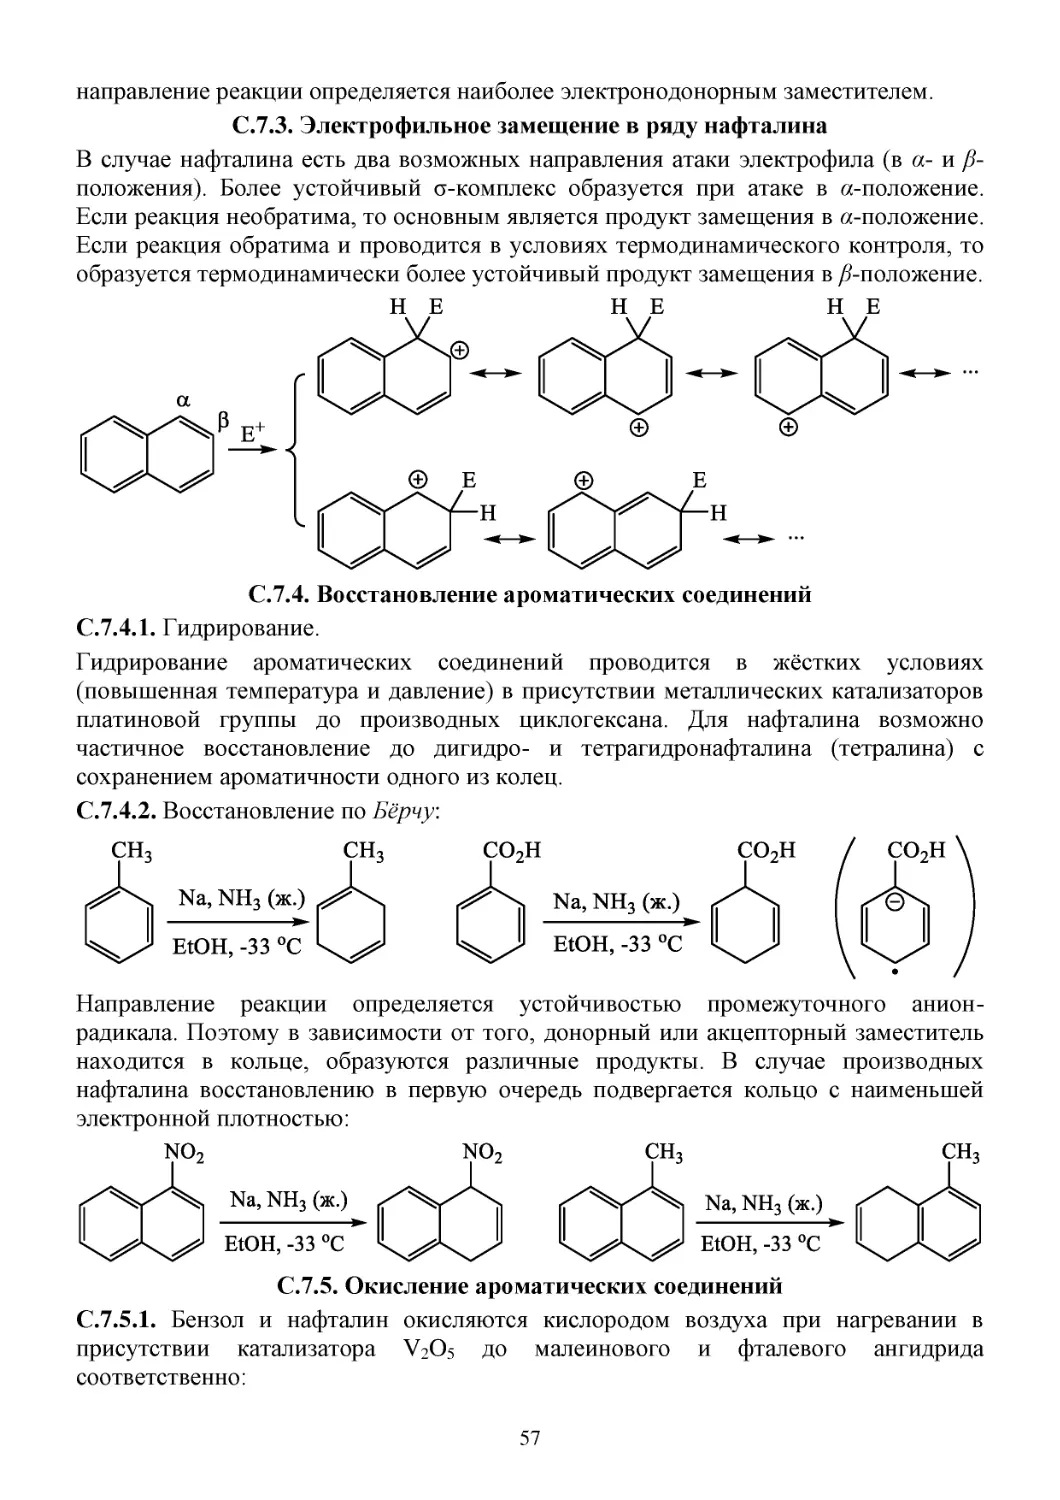 C.7.3. Электрофильное замещение в ряду нафталина
С.7.4. Восстановление ароматических соединений
С.7.5. Окисление ароматических соединений